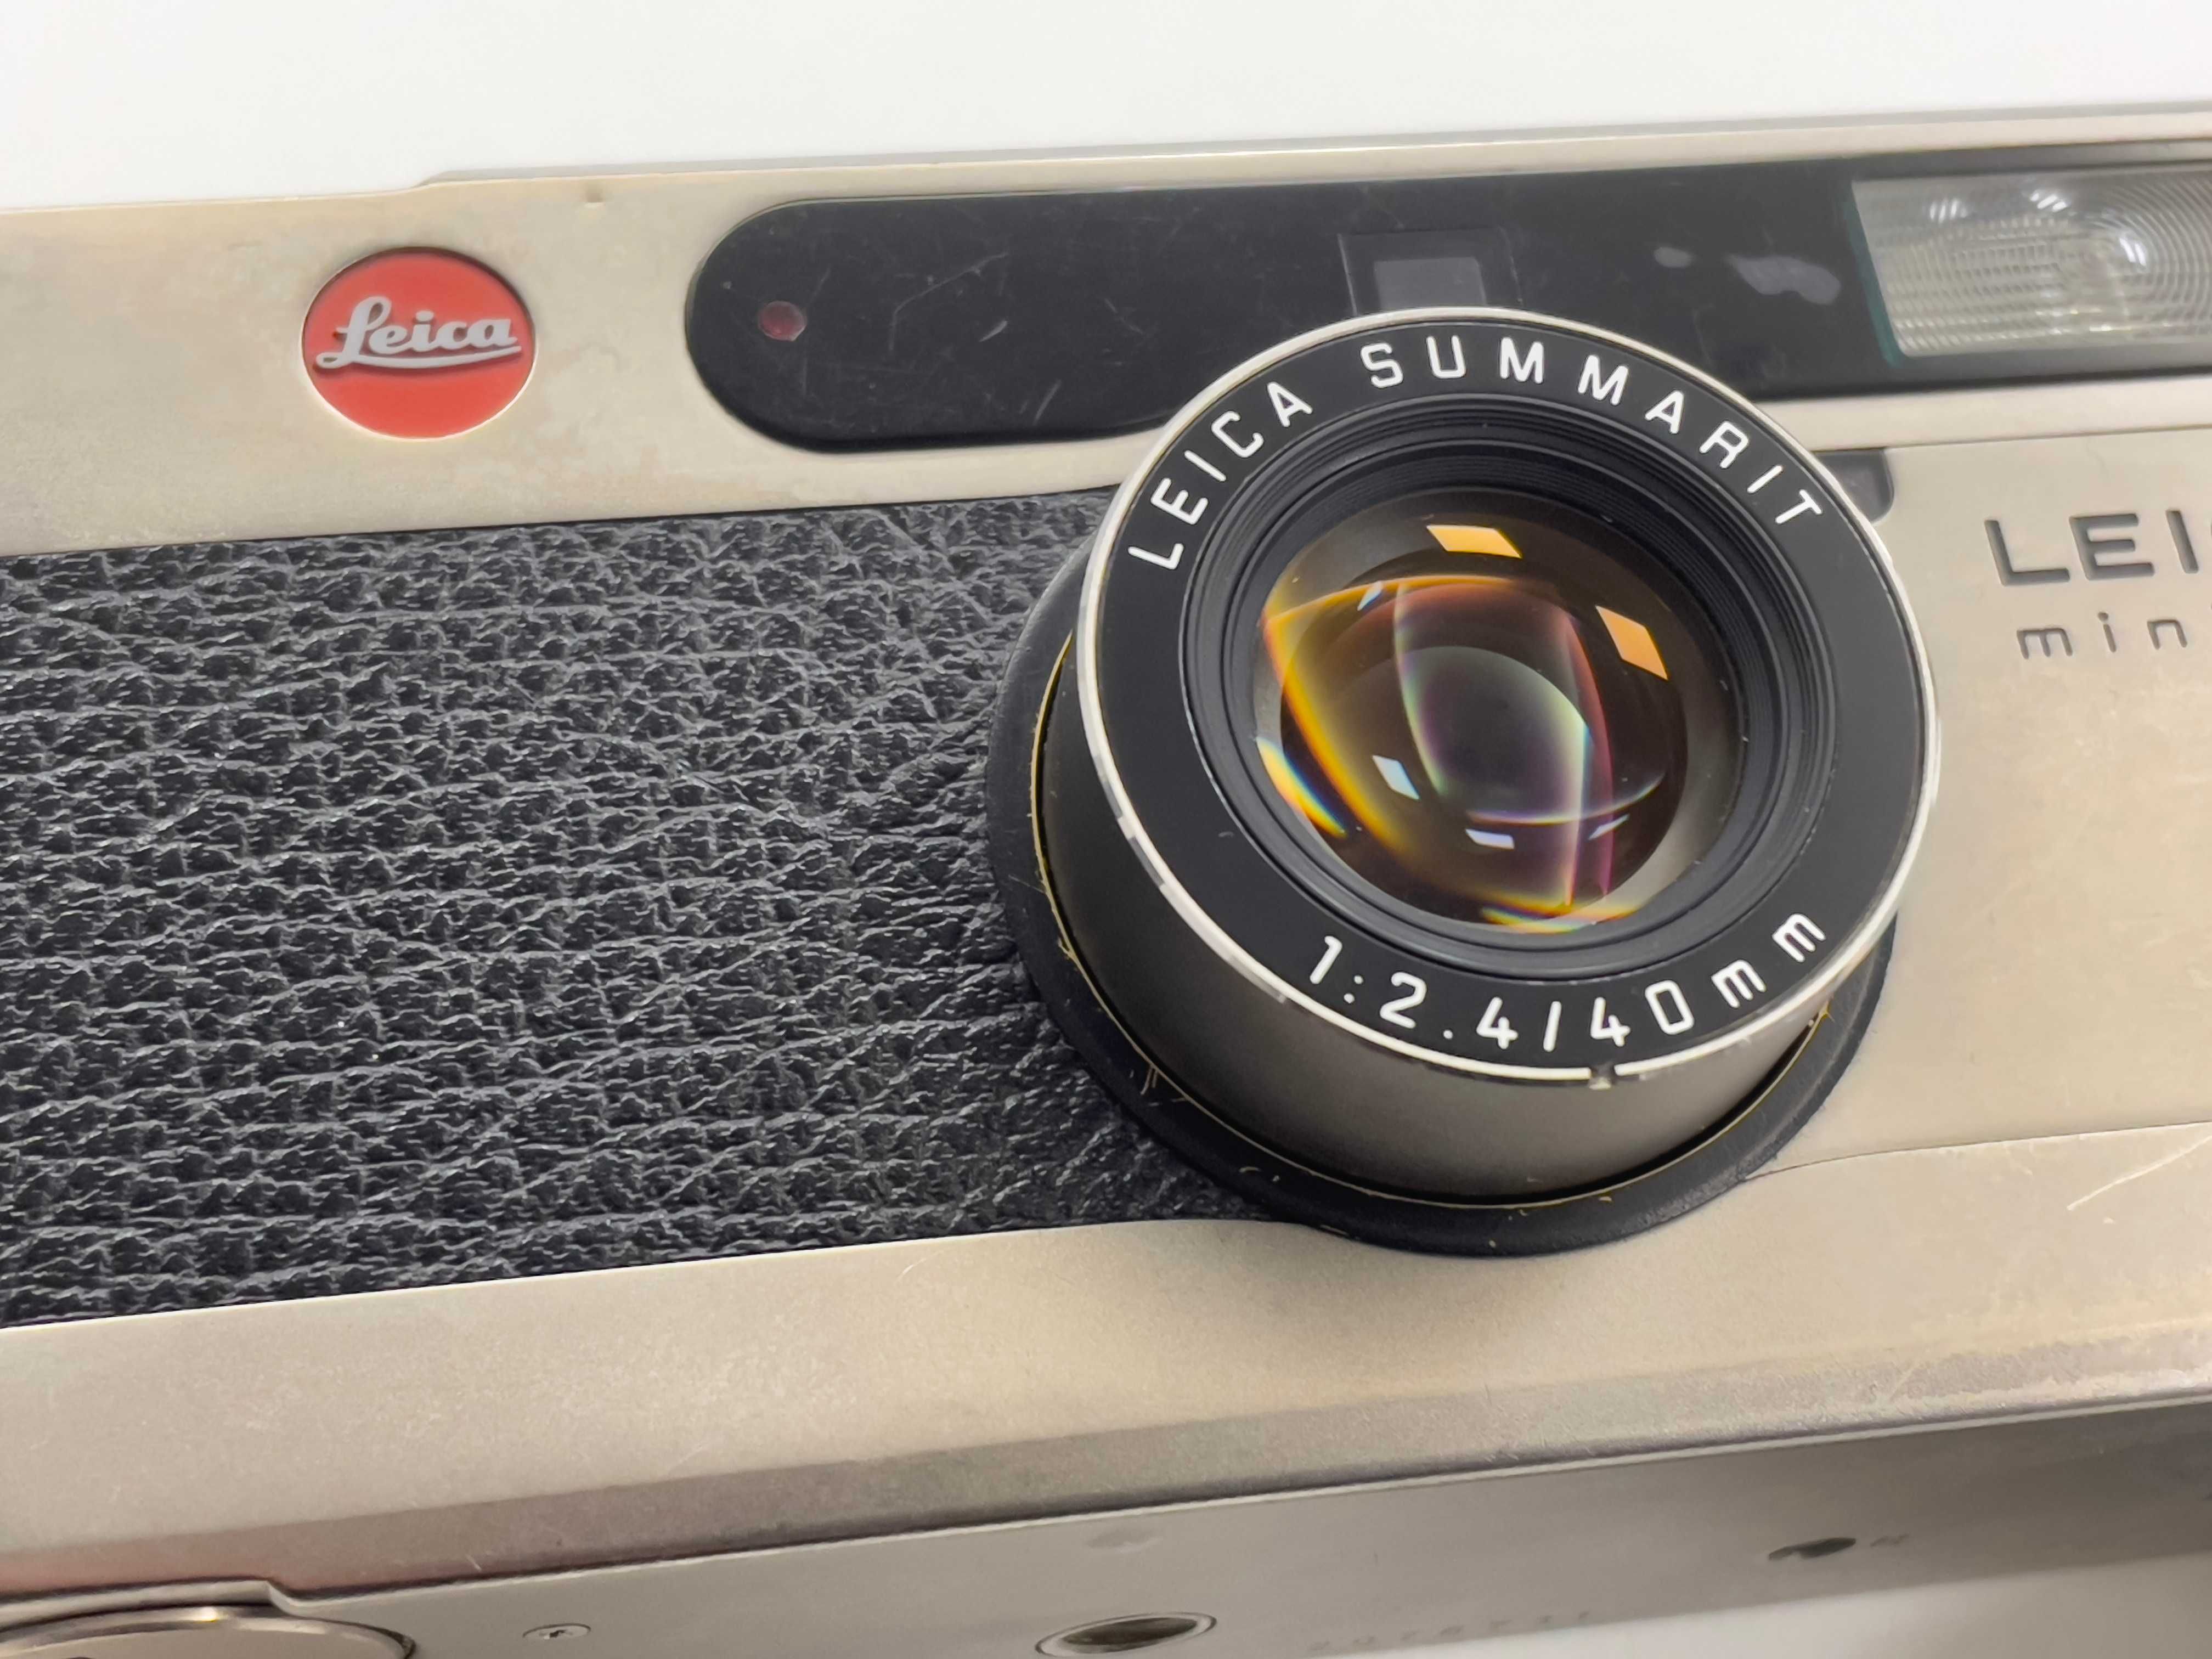 Leica Minilux 40mm F2.4 Summarit